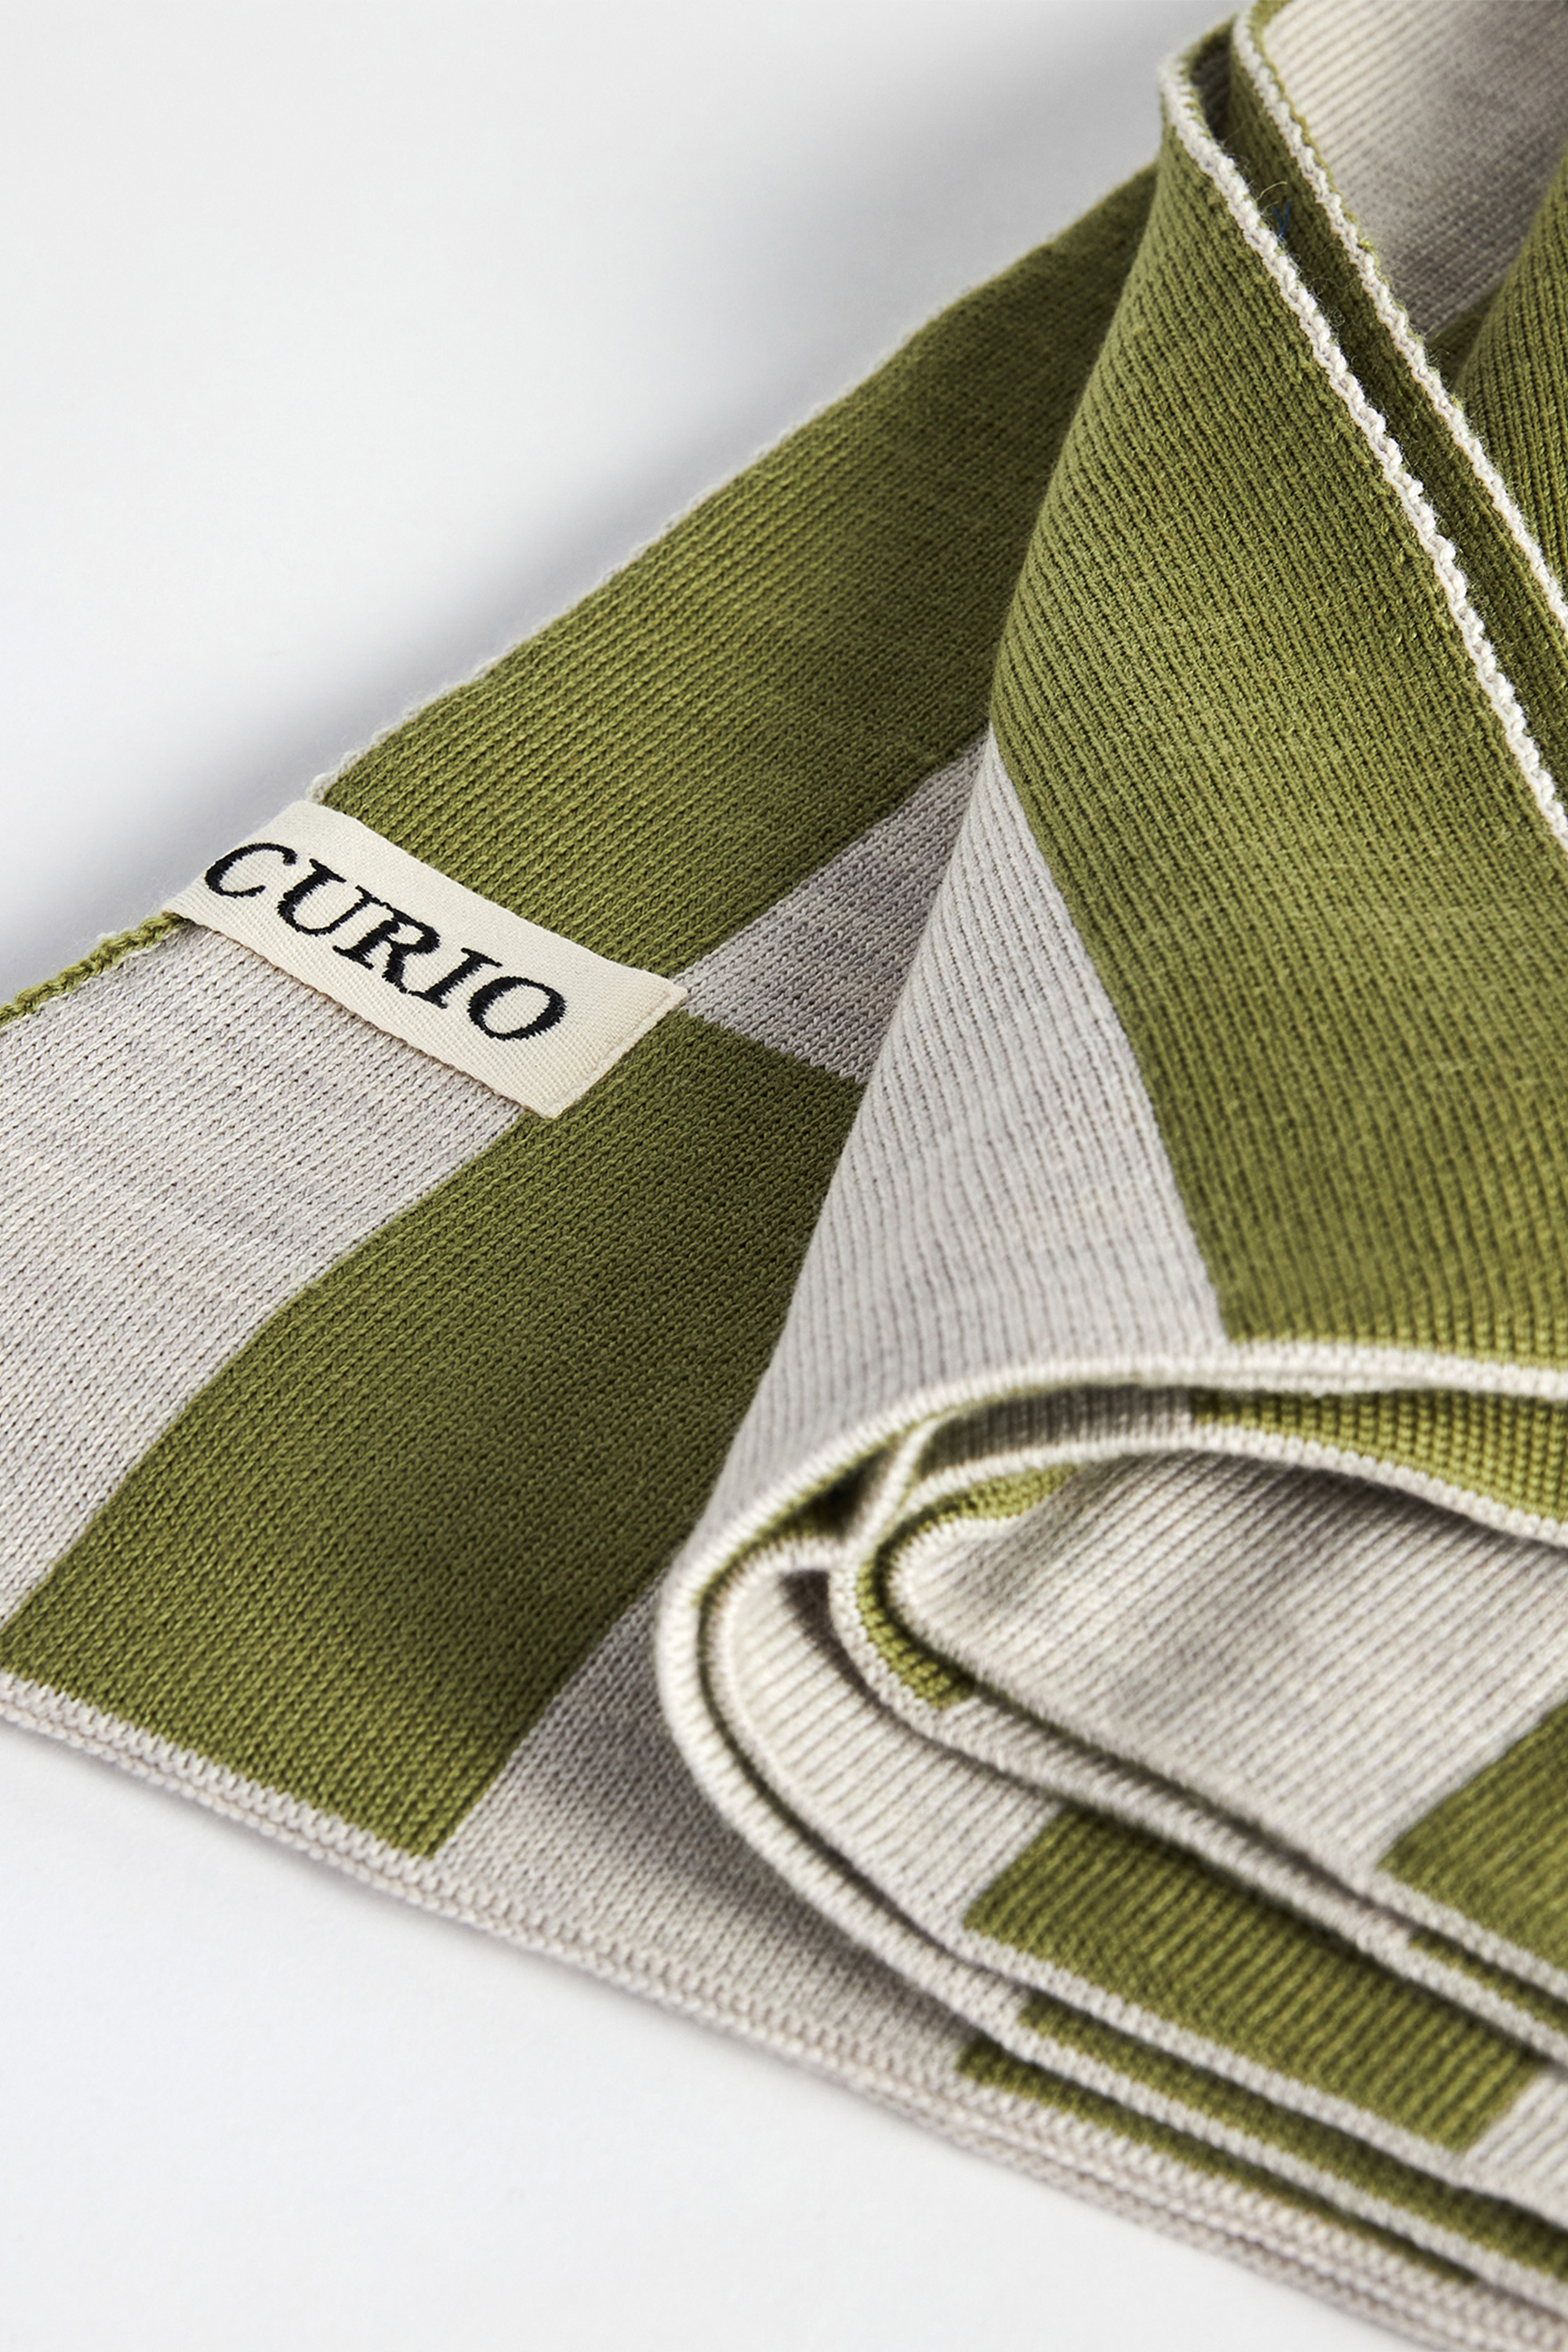 Jardan Homewares | Curio Practice | Wool Blankets Made in Melbourne